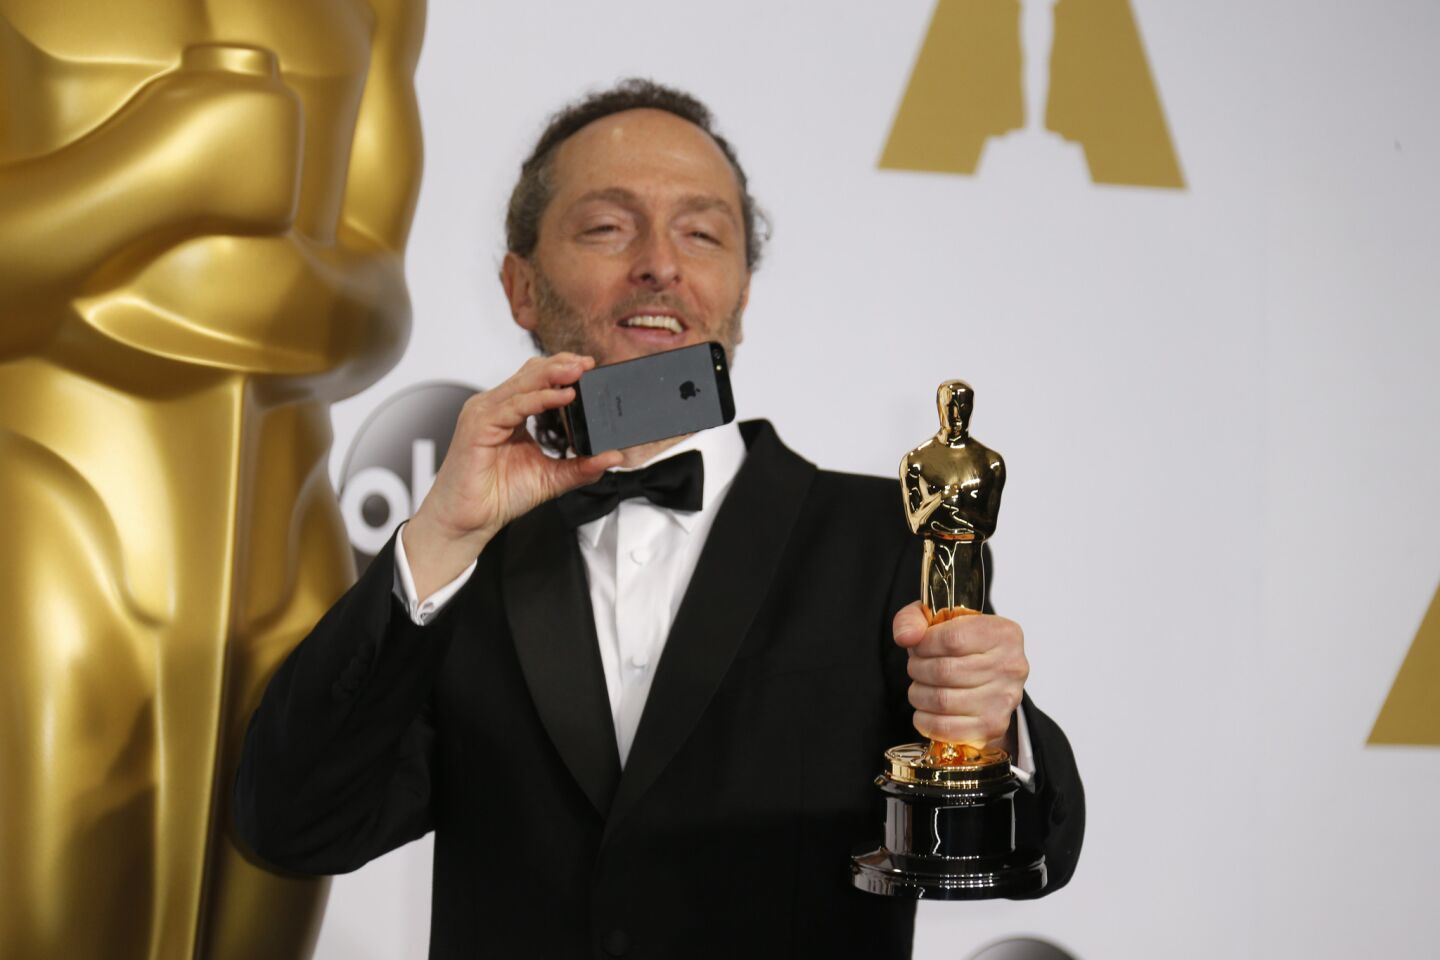 Oscars 2015 winners' room | Emmanuel Lubezki